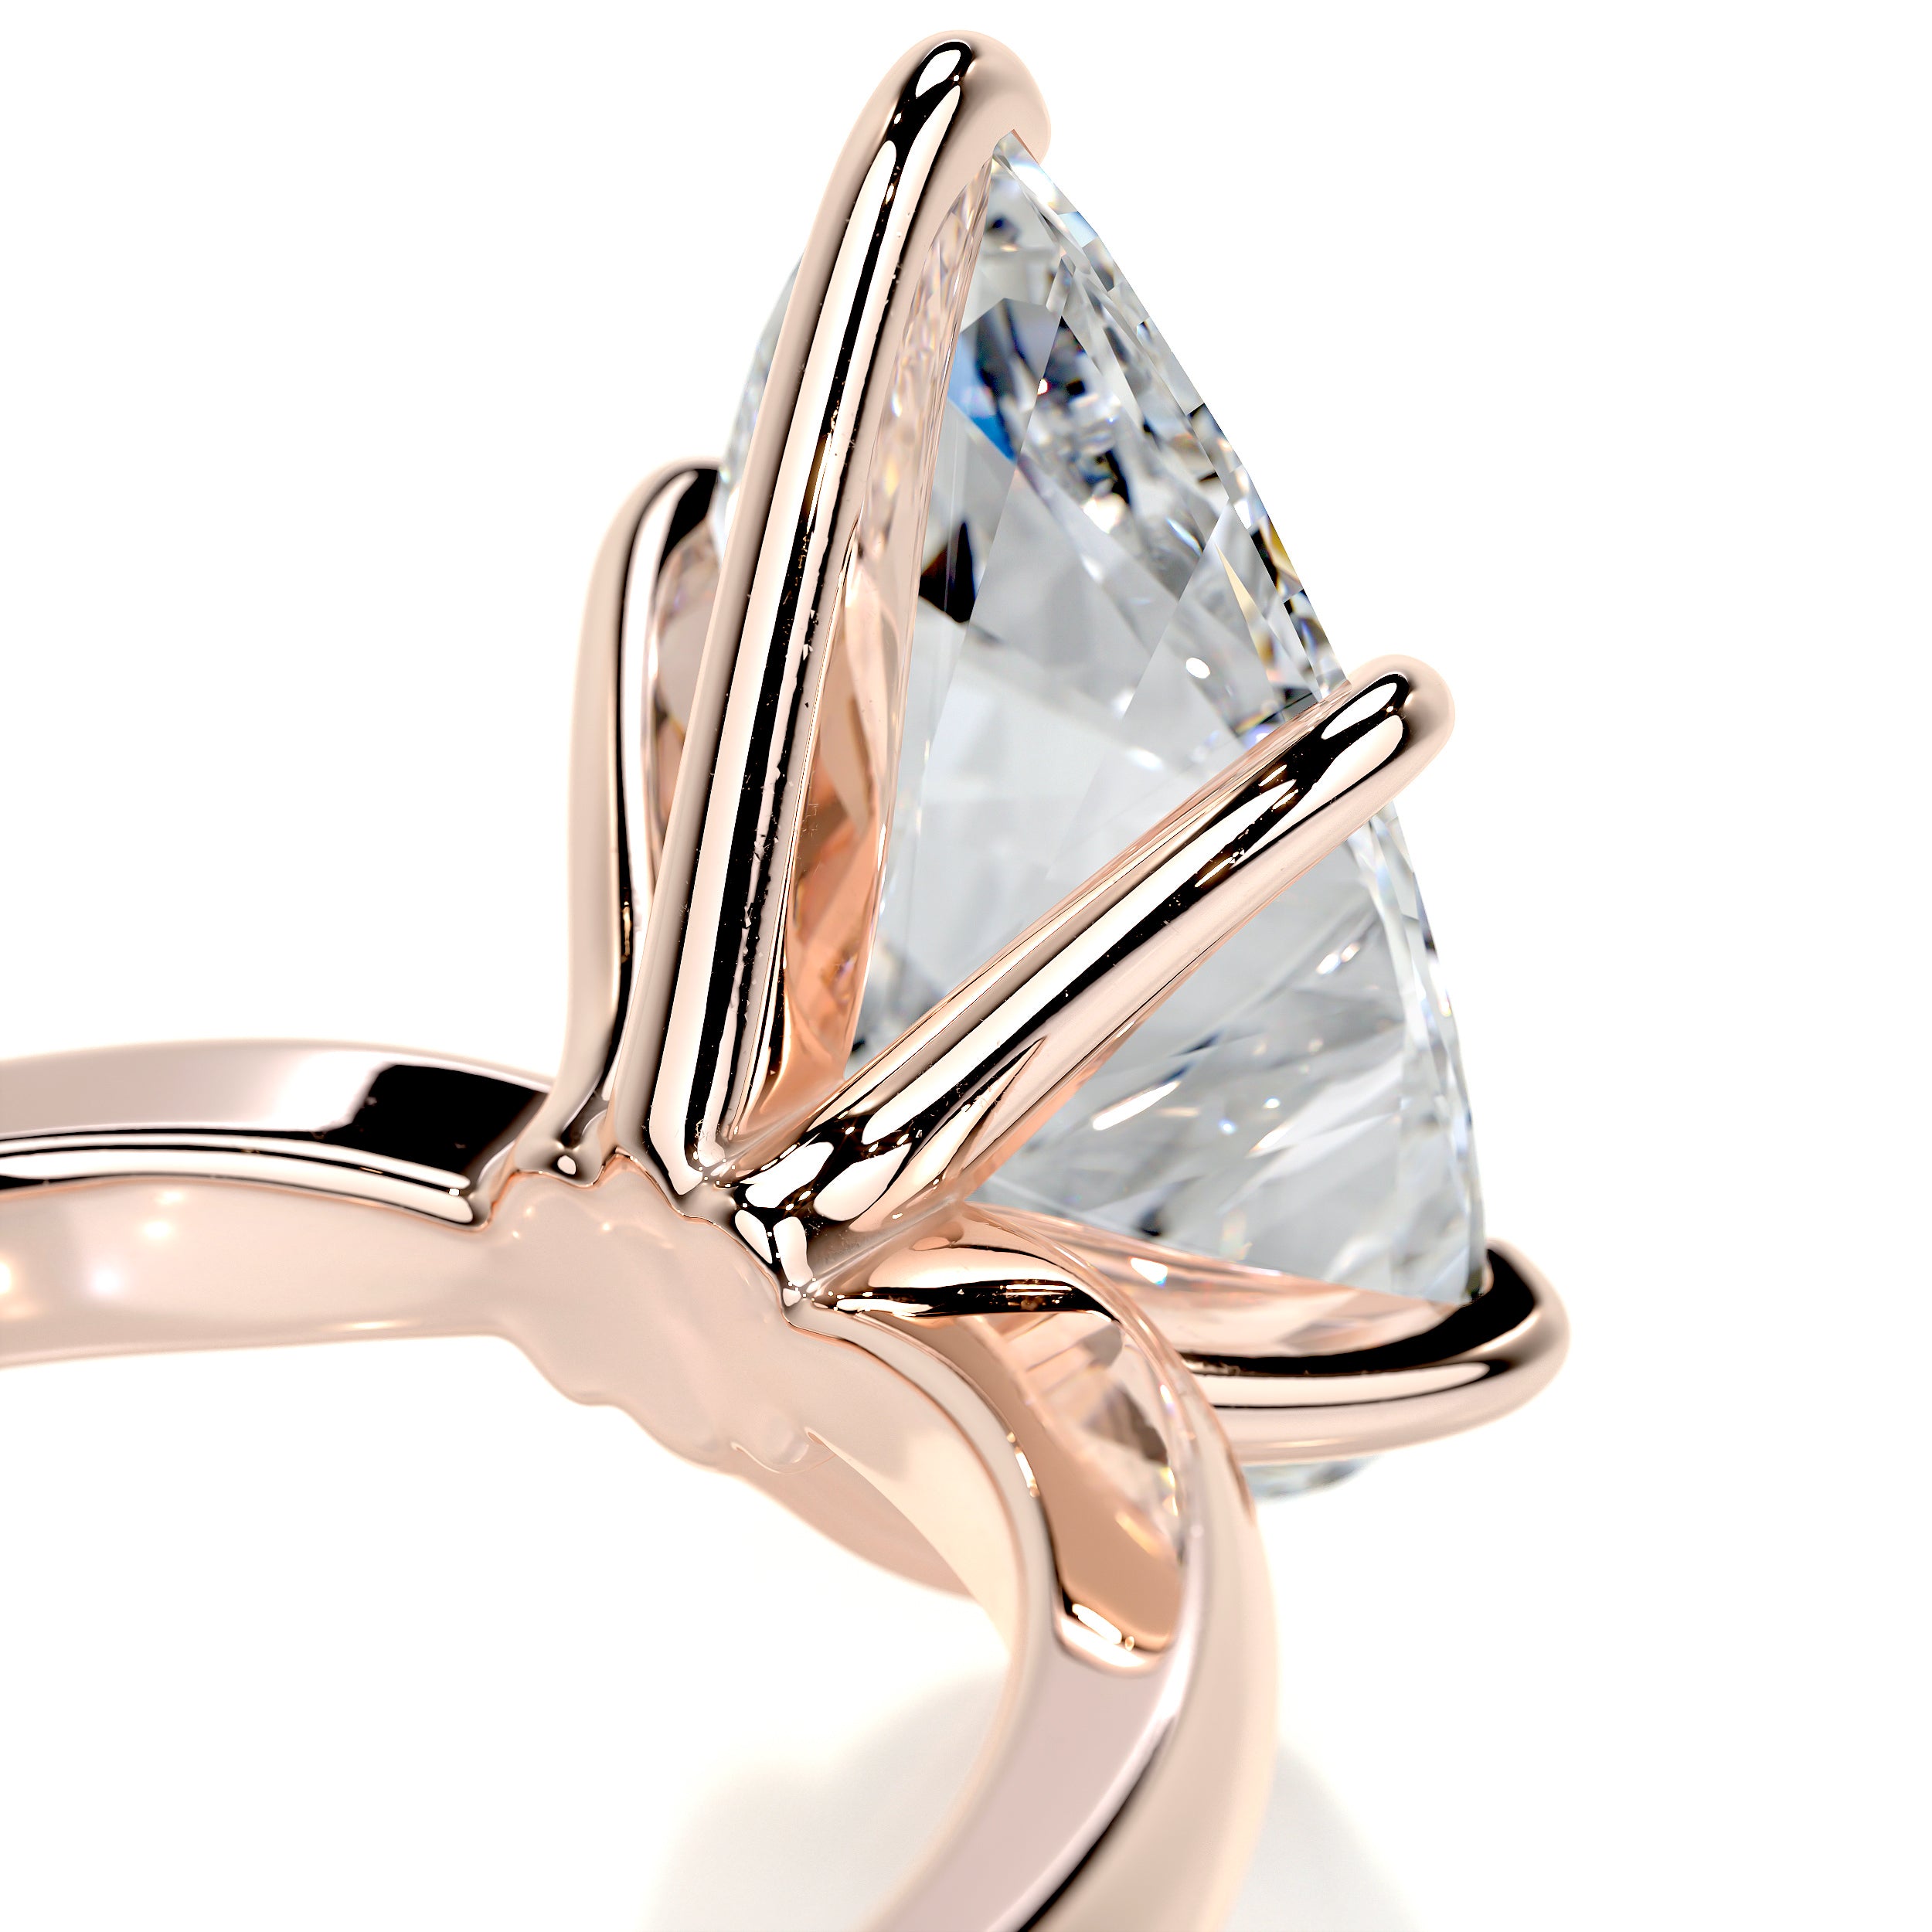 Adaline Diamond Engagement Ring   (5 Carat) -14K Rose Gold